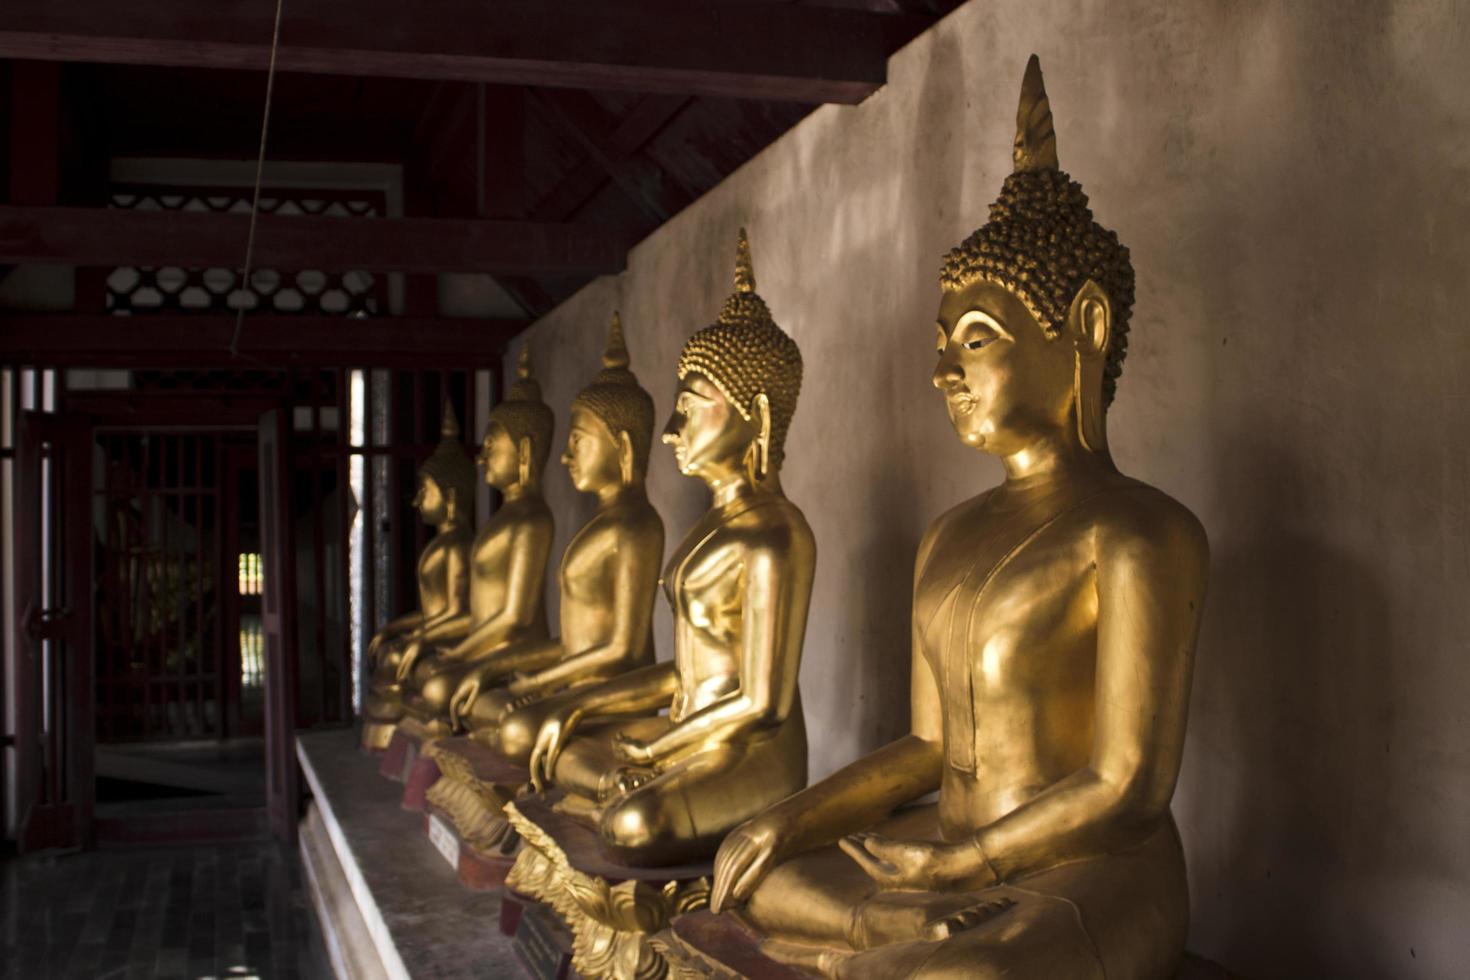 Stadt, Land, MM TT, JJJJ - goldene Buddha-Statuen im Tempel foto